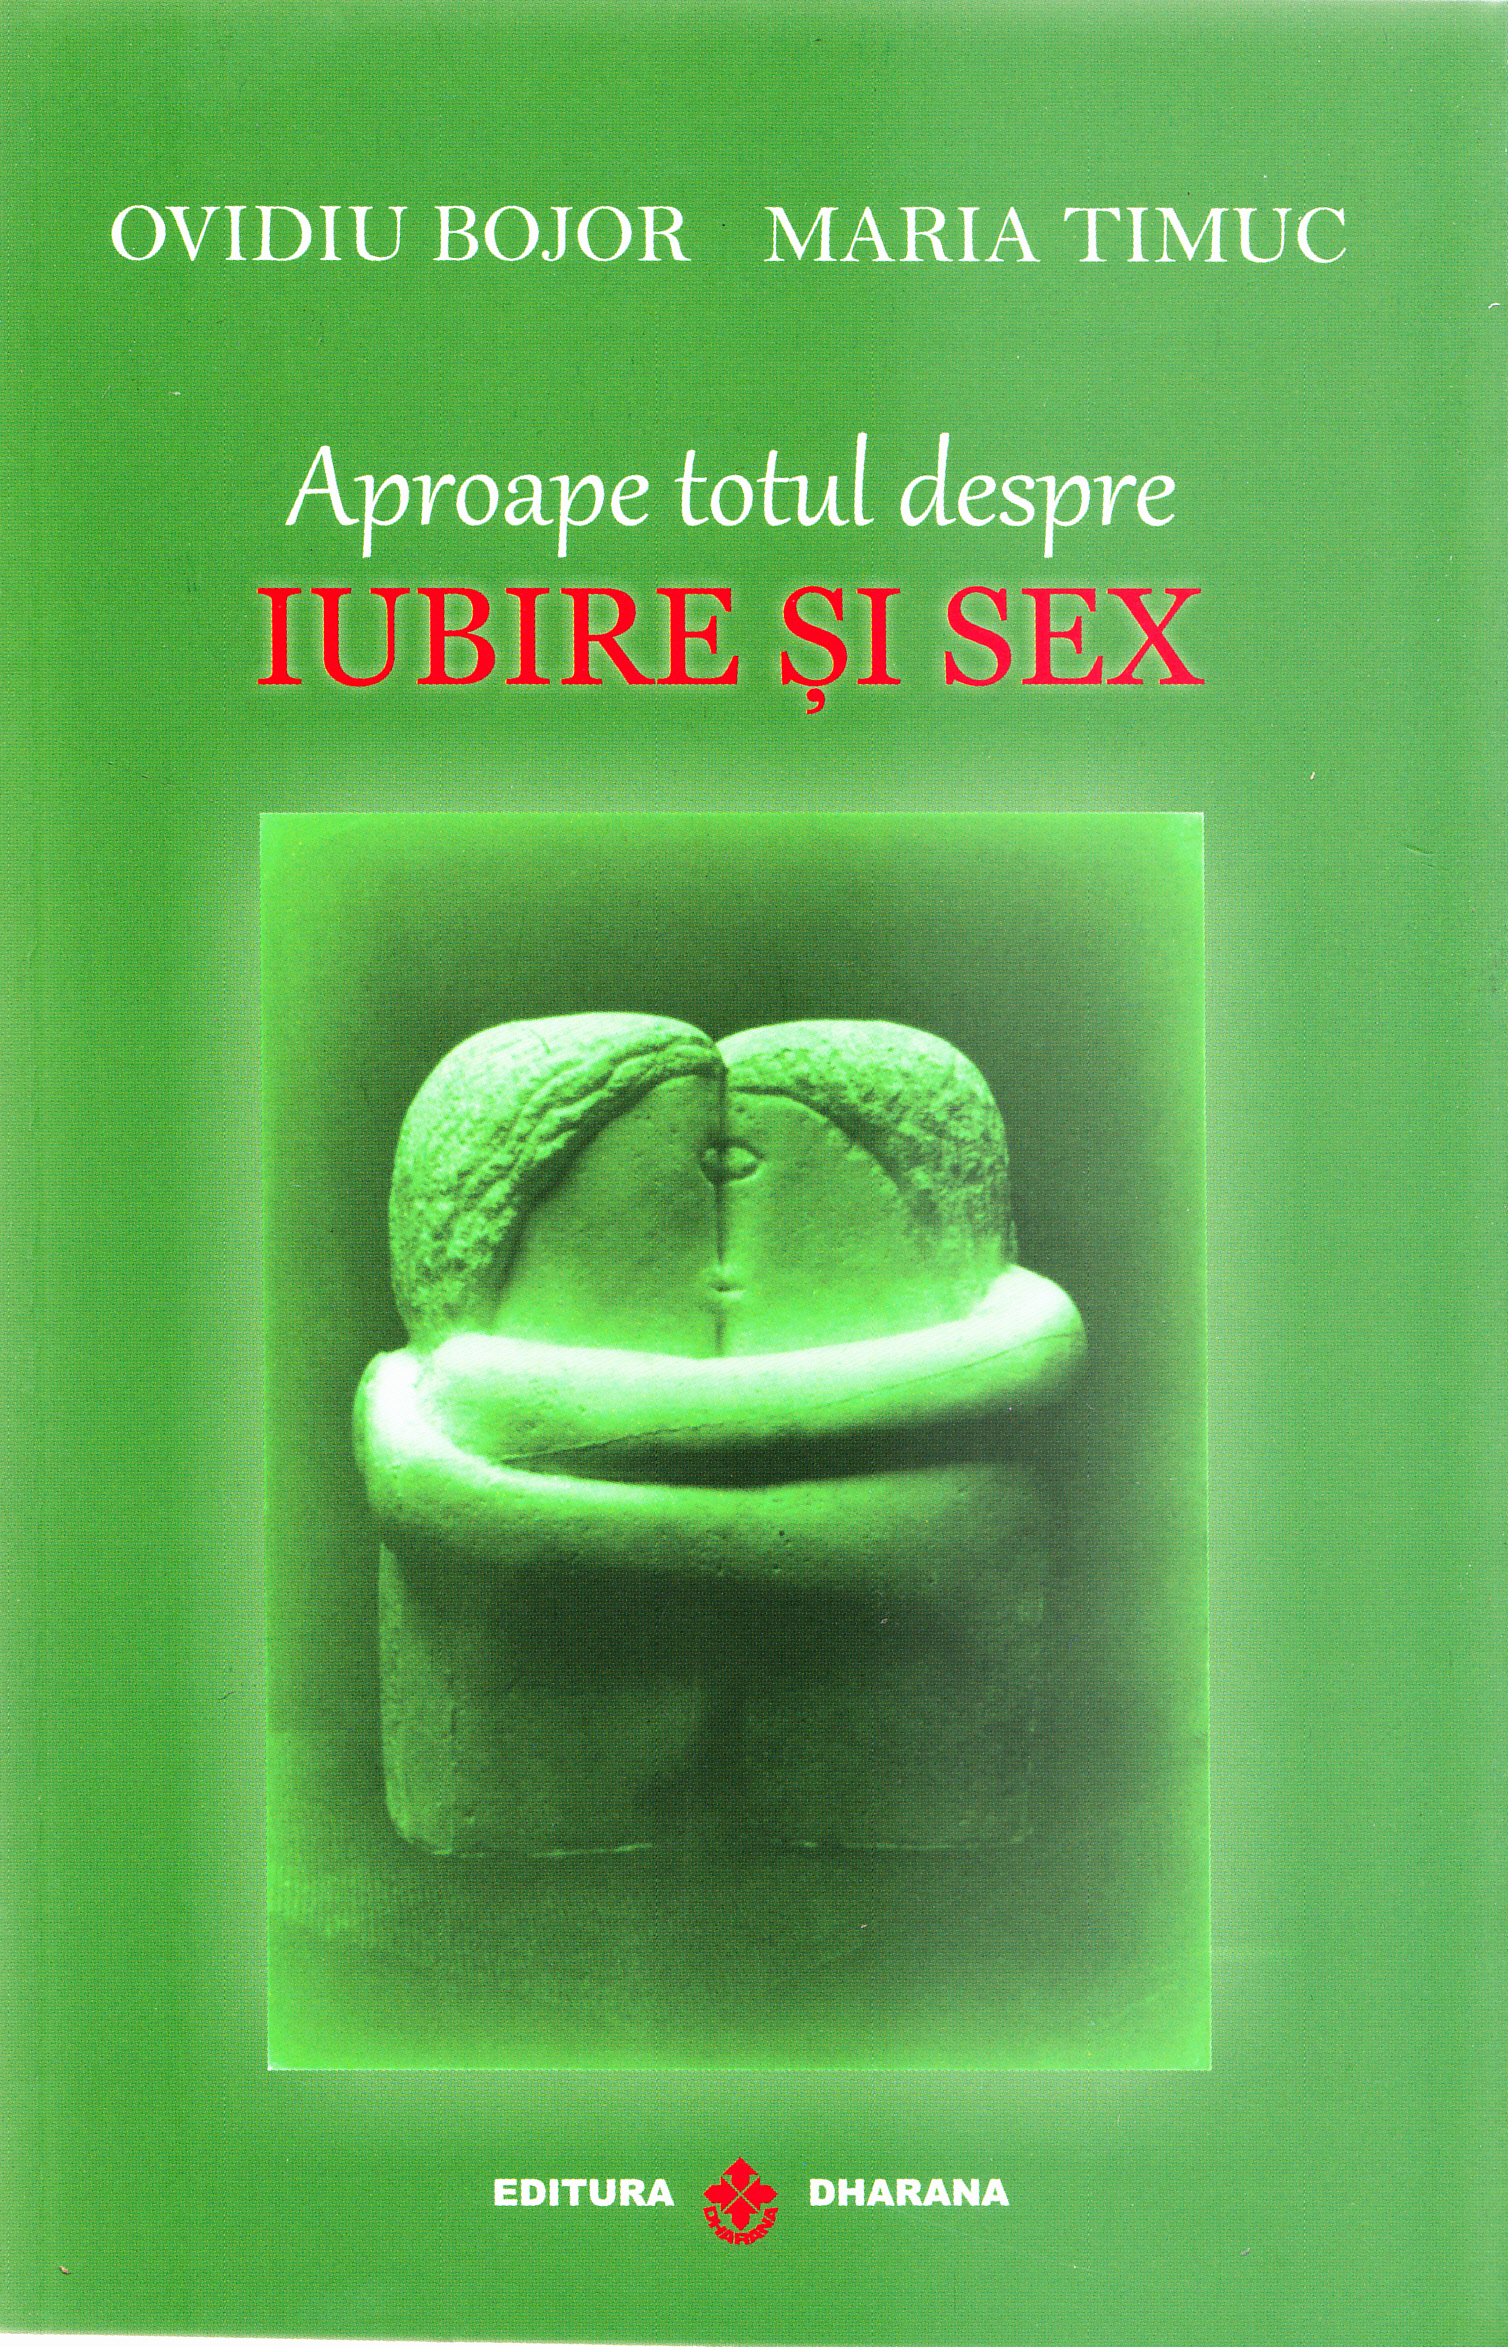 PDF Aproape totul despre iubire si sex | Ovidiu Bojor, Maria Timuc carturesti.ro Carte